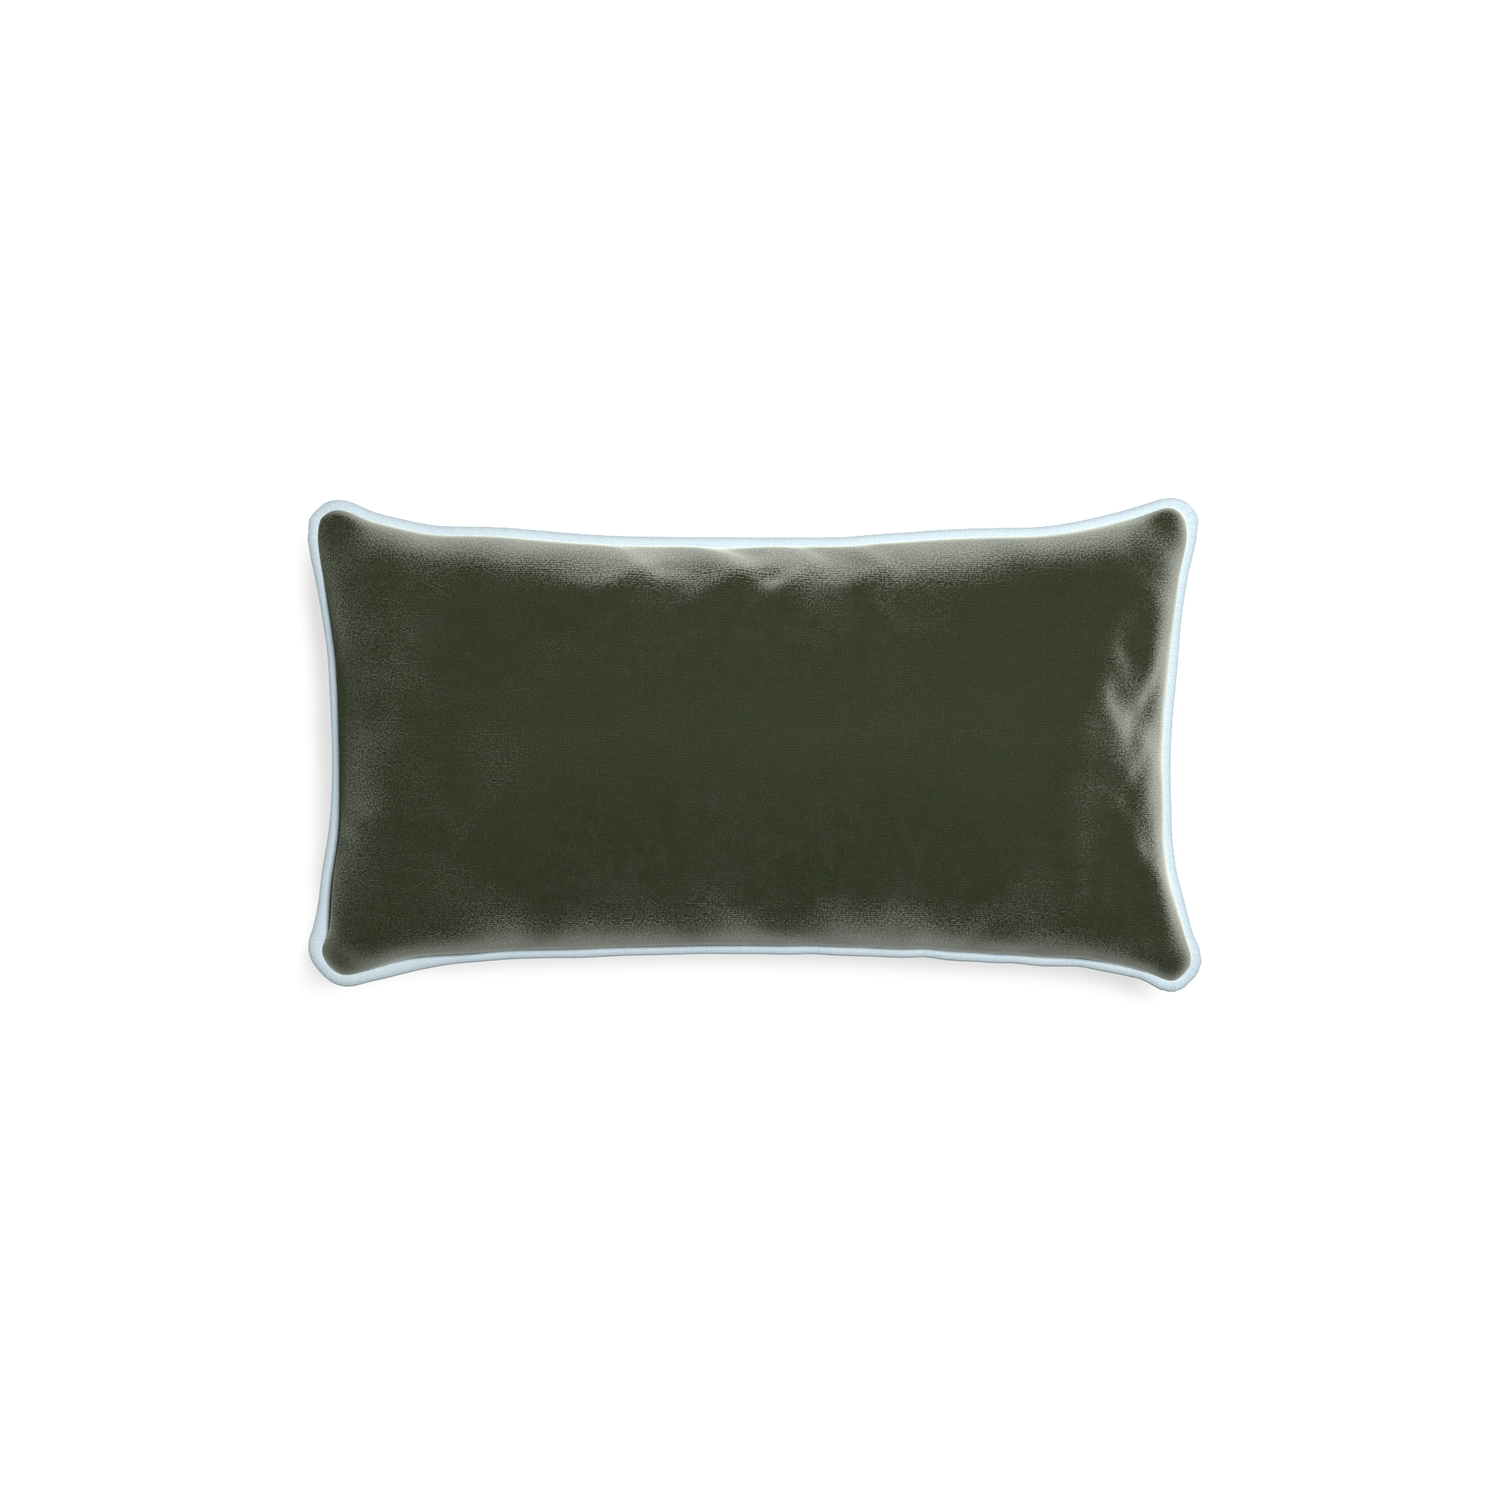 rectangle fern green velvet pillow with light blue piping